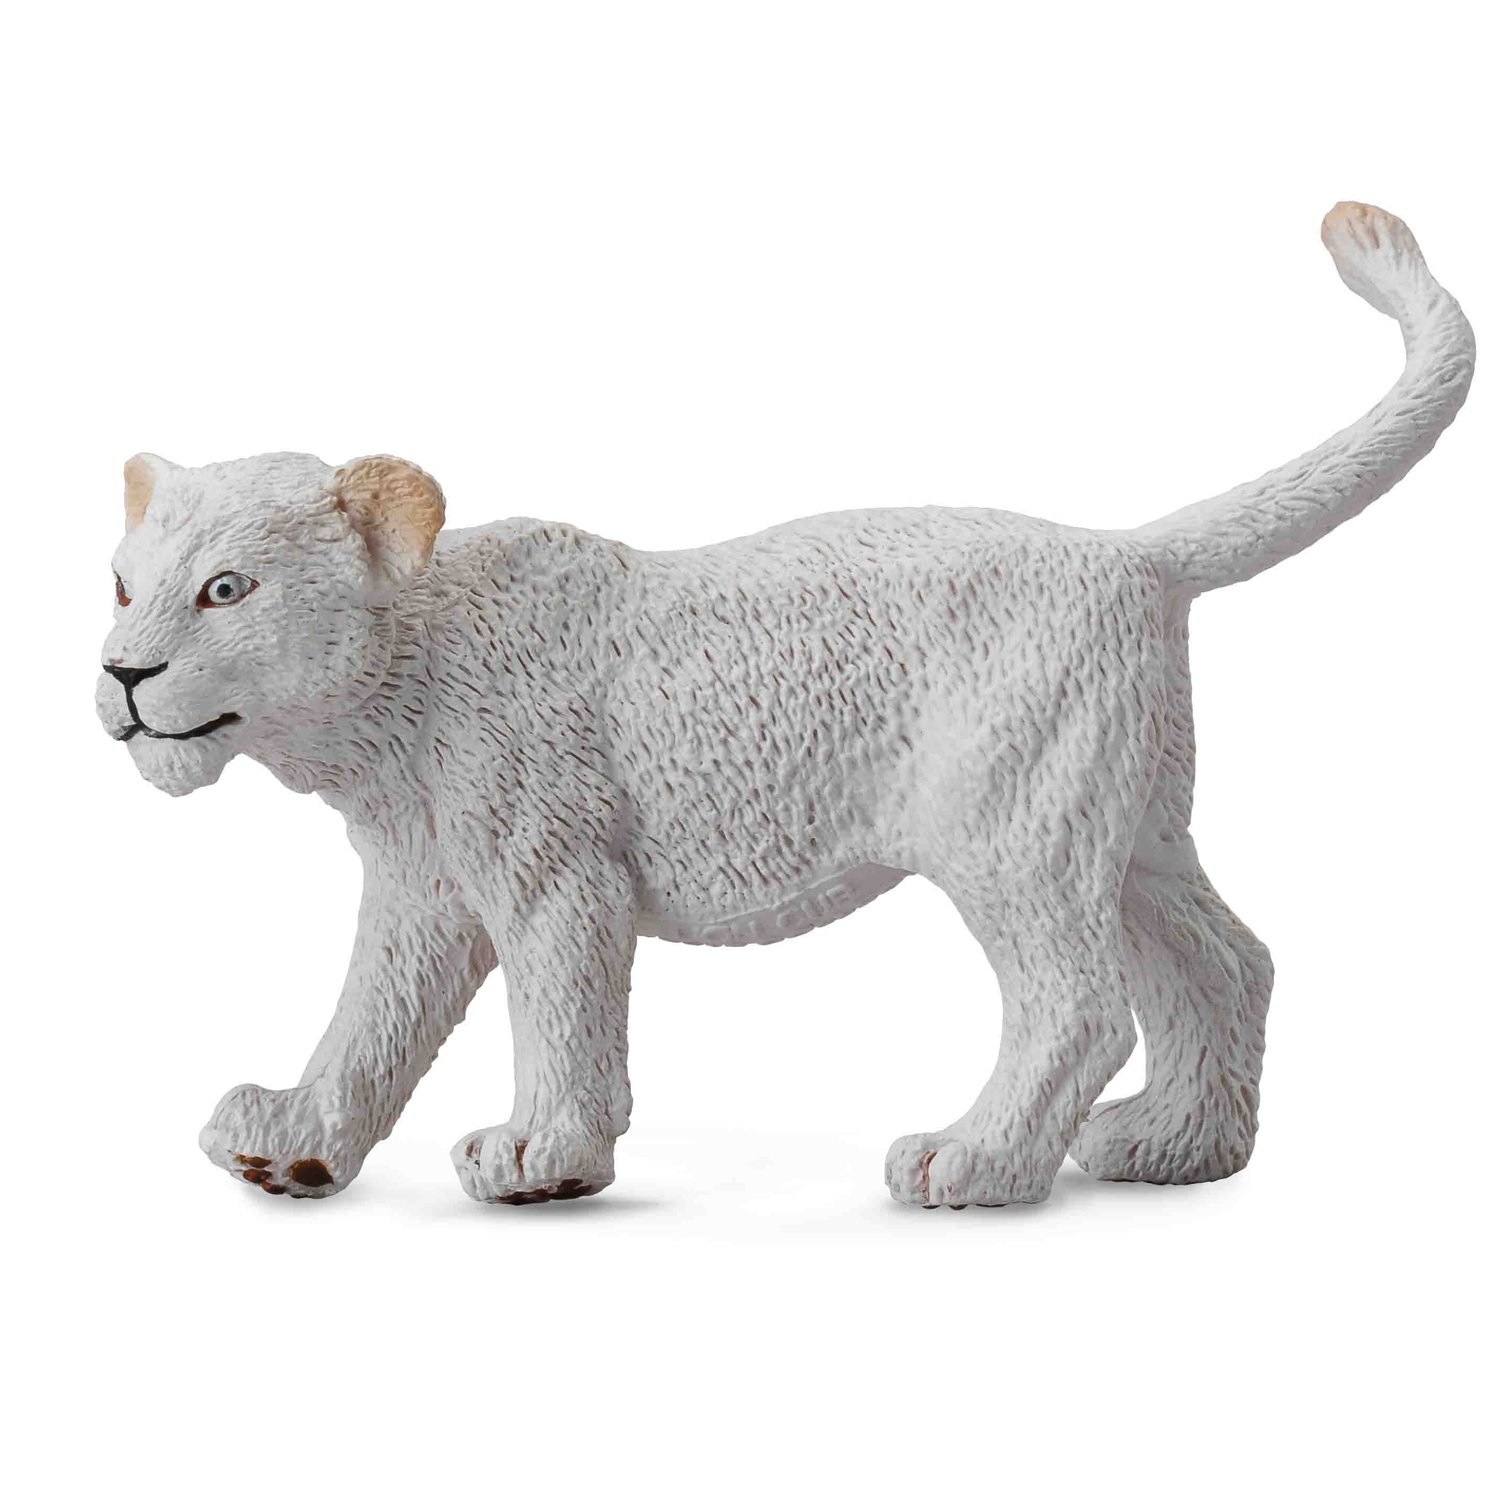 《 COLLECTA 》英國 Procon 動物模型 幼白獅(走路)